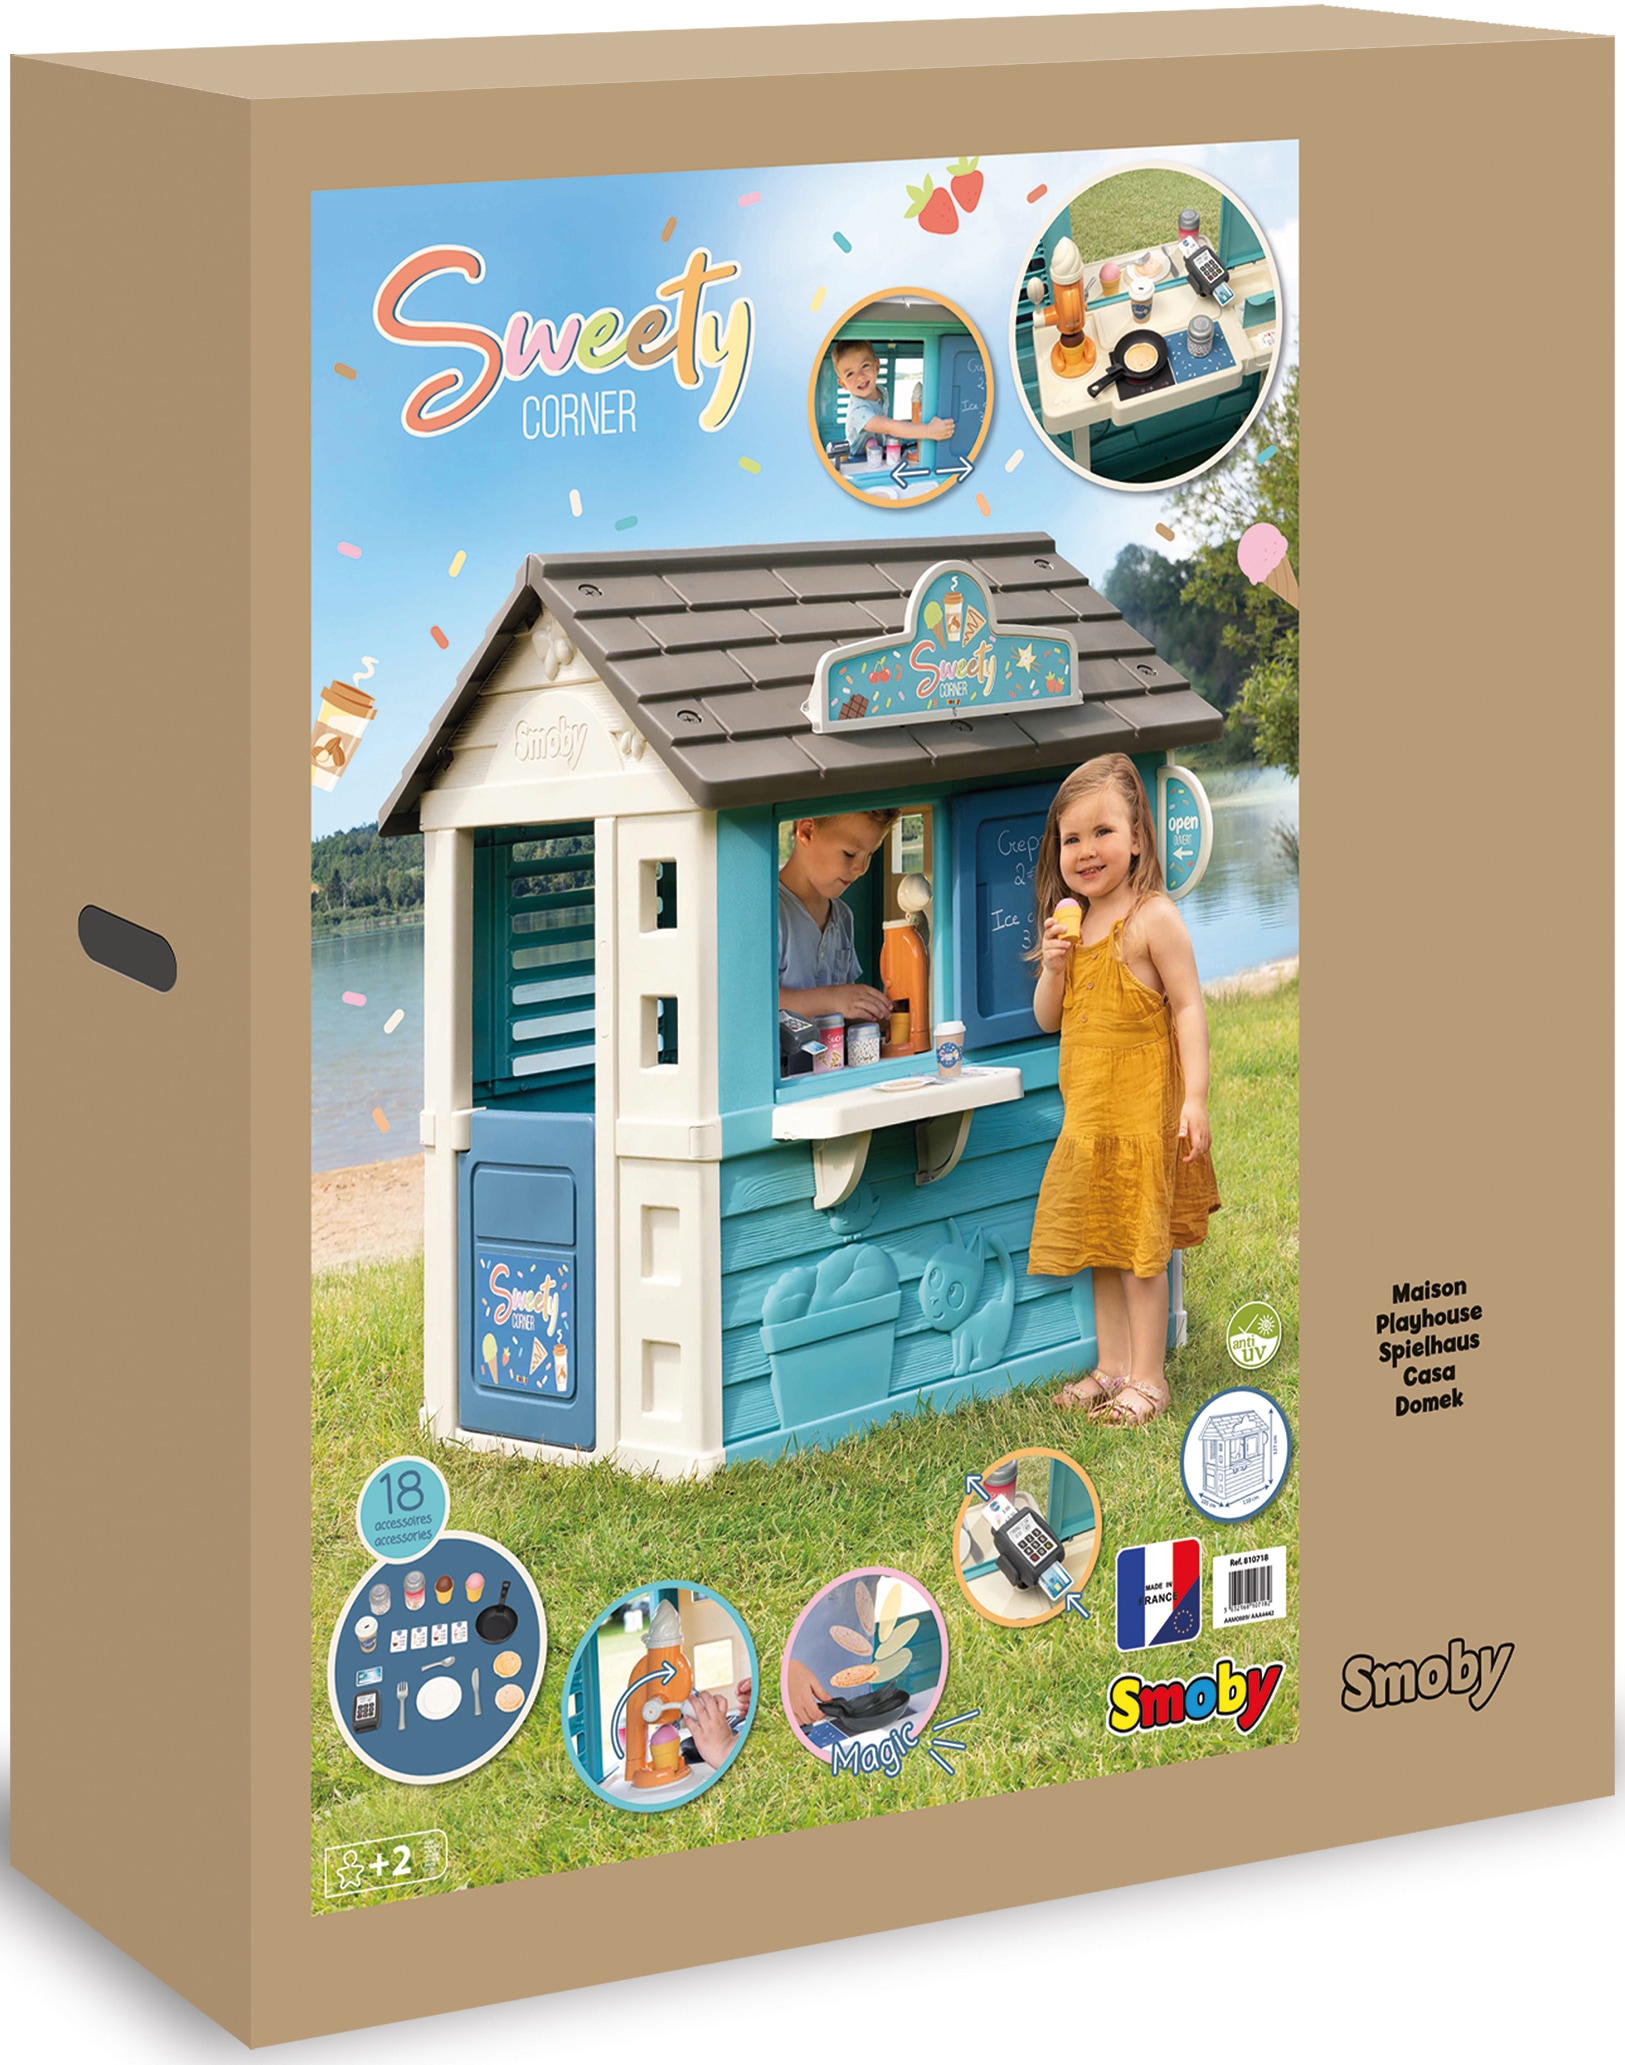 Smoby Spielhaus »Sweety Corner«, mit Verkaufstheke und viel Zubehör